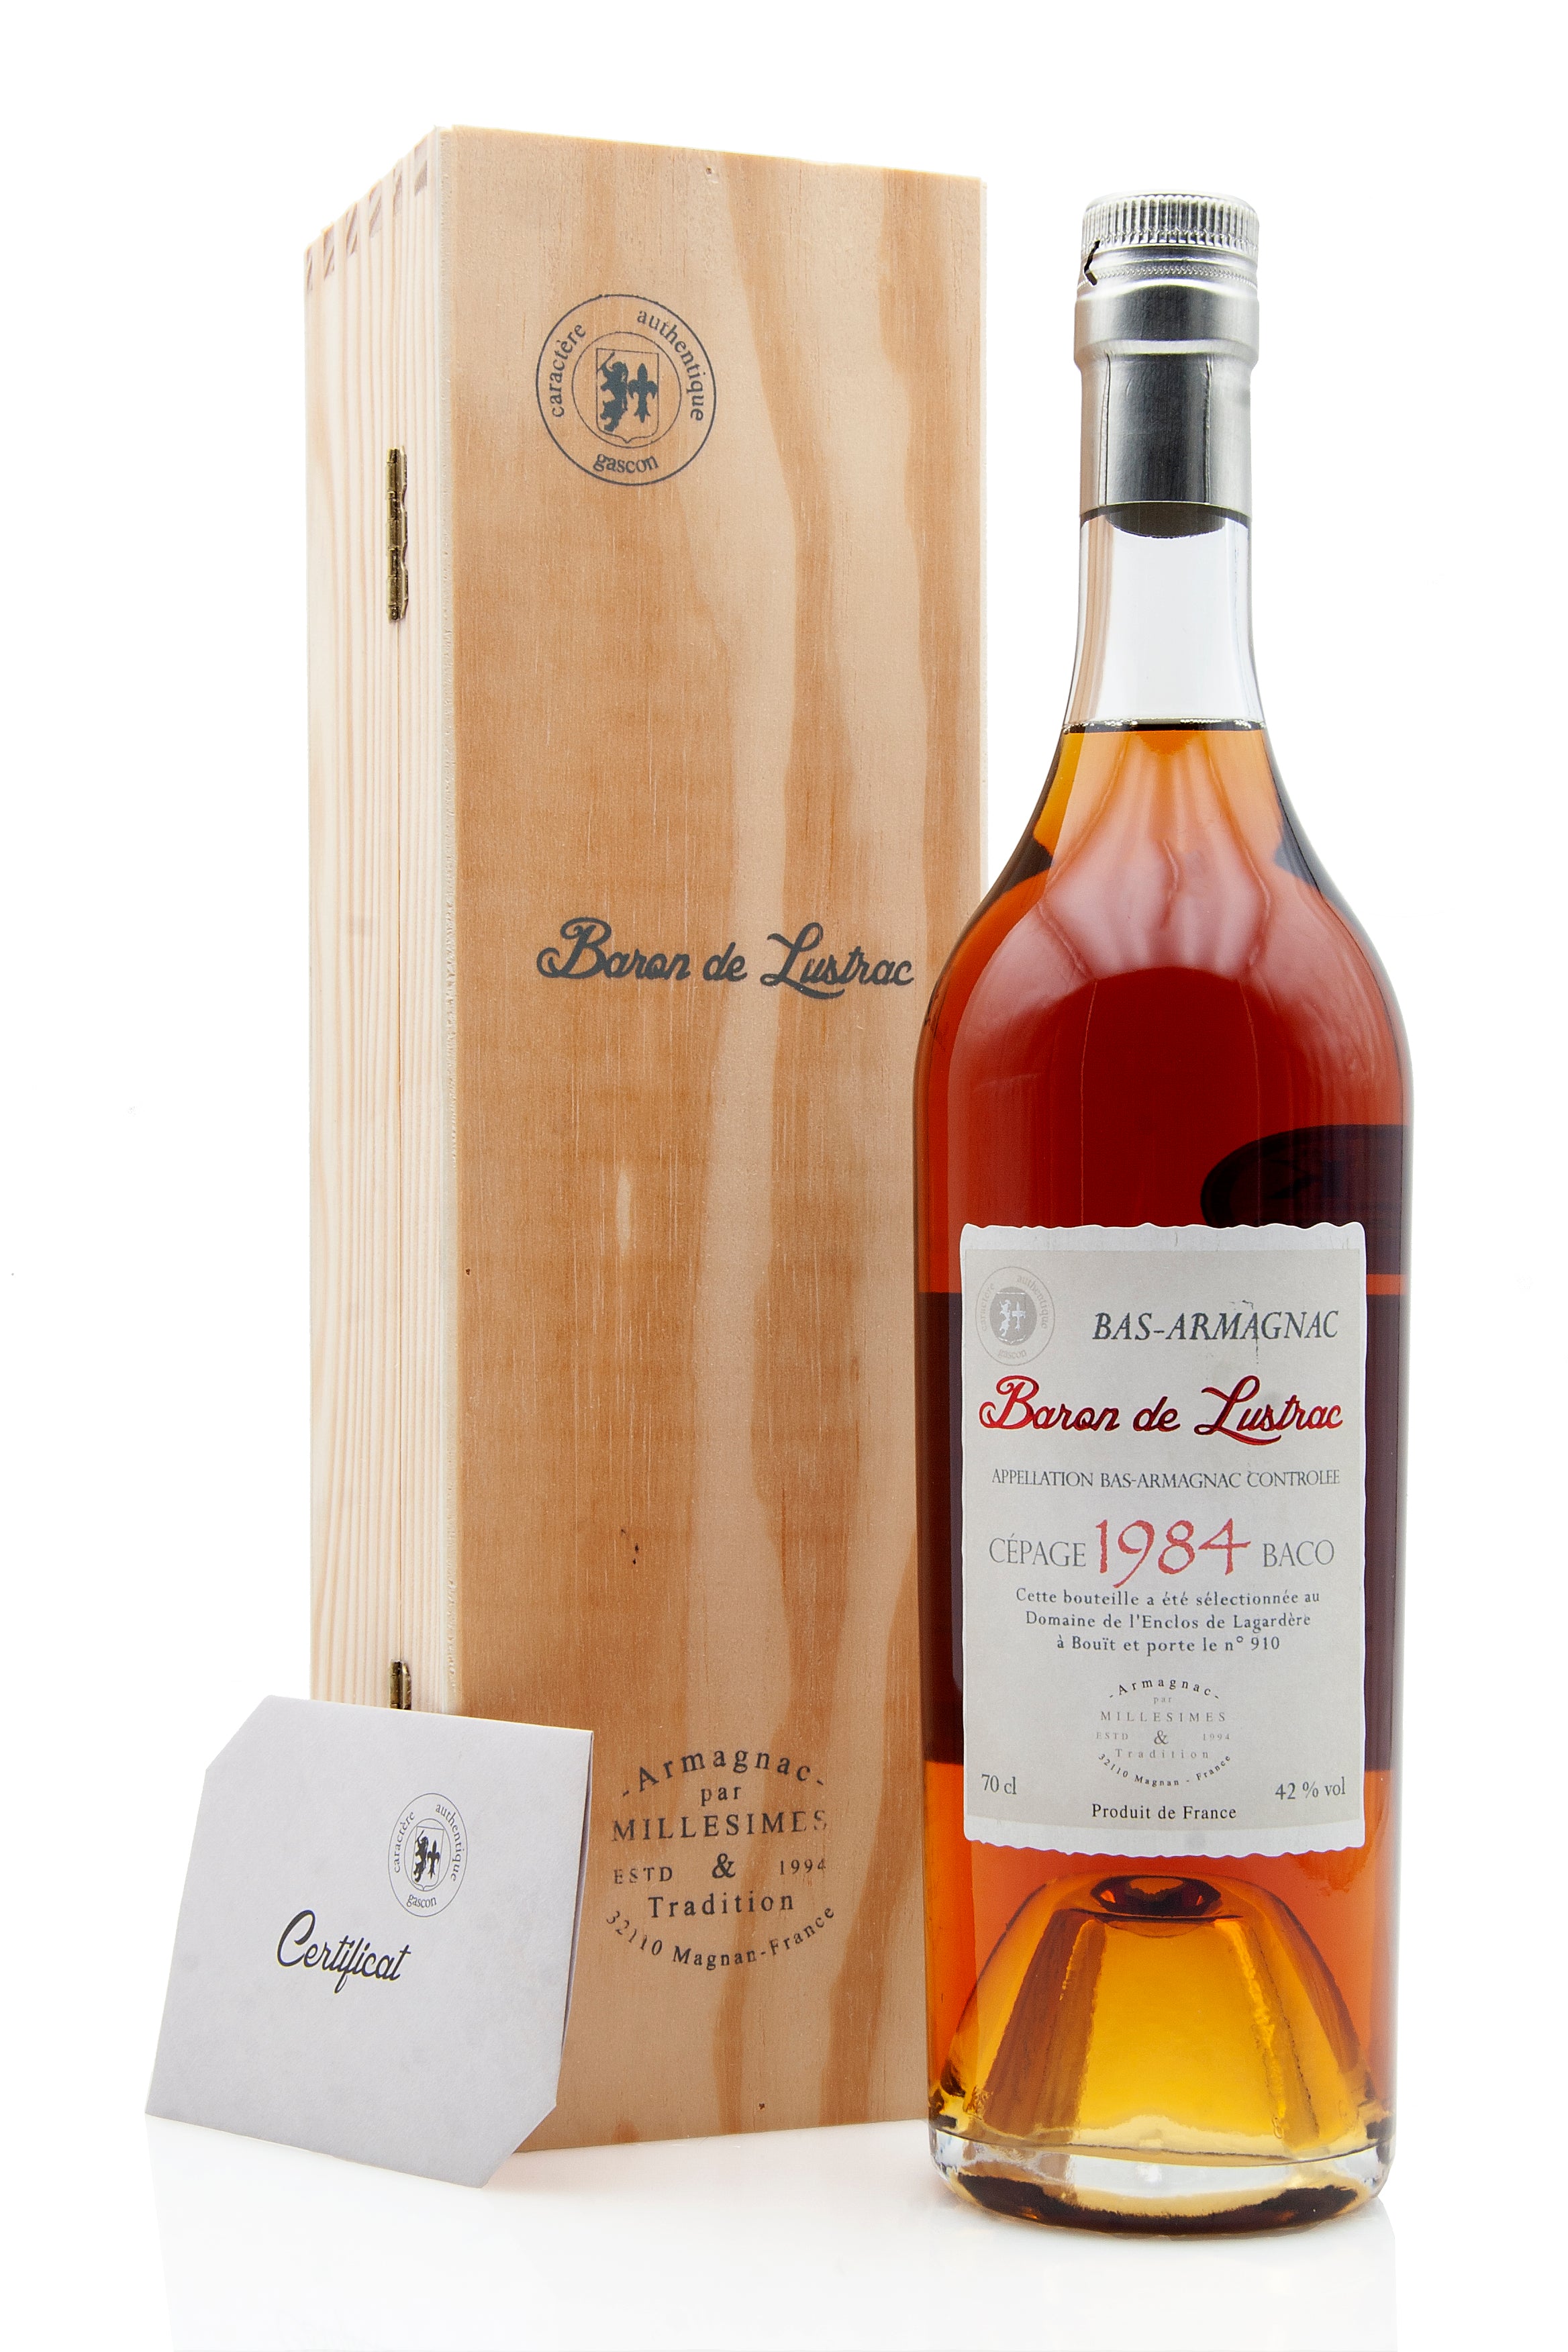 Baron de Lustrac 1984 Vintage Armagnac | Abbey Whisky Online